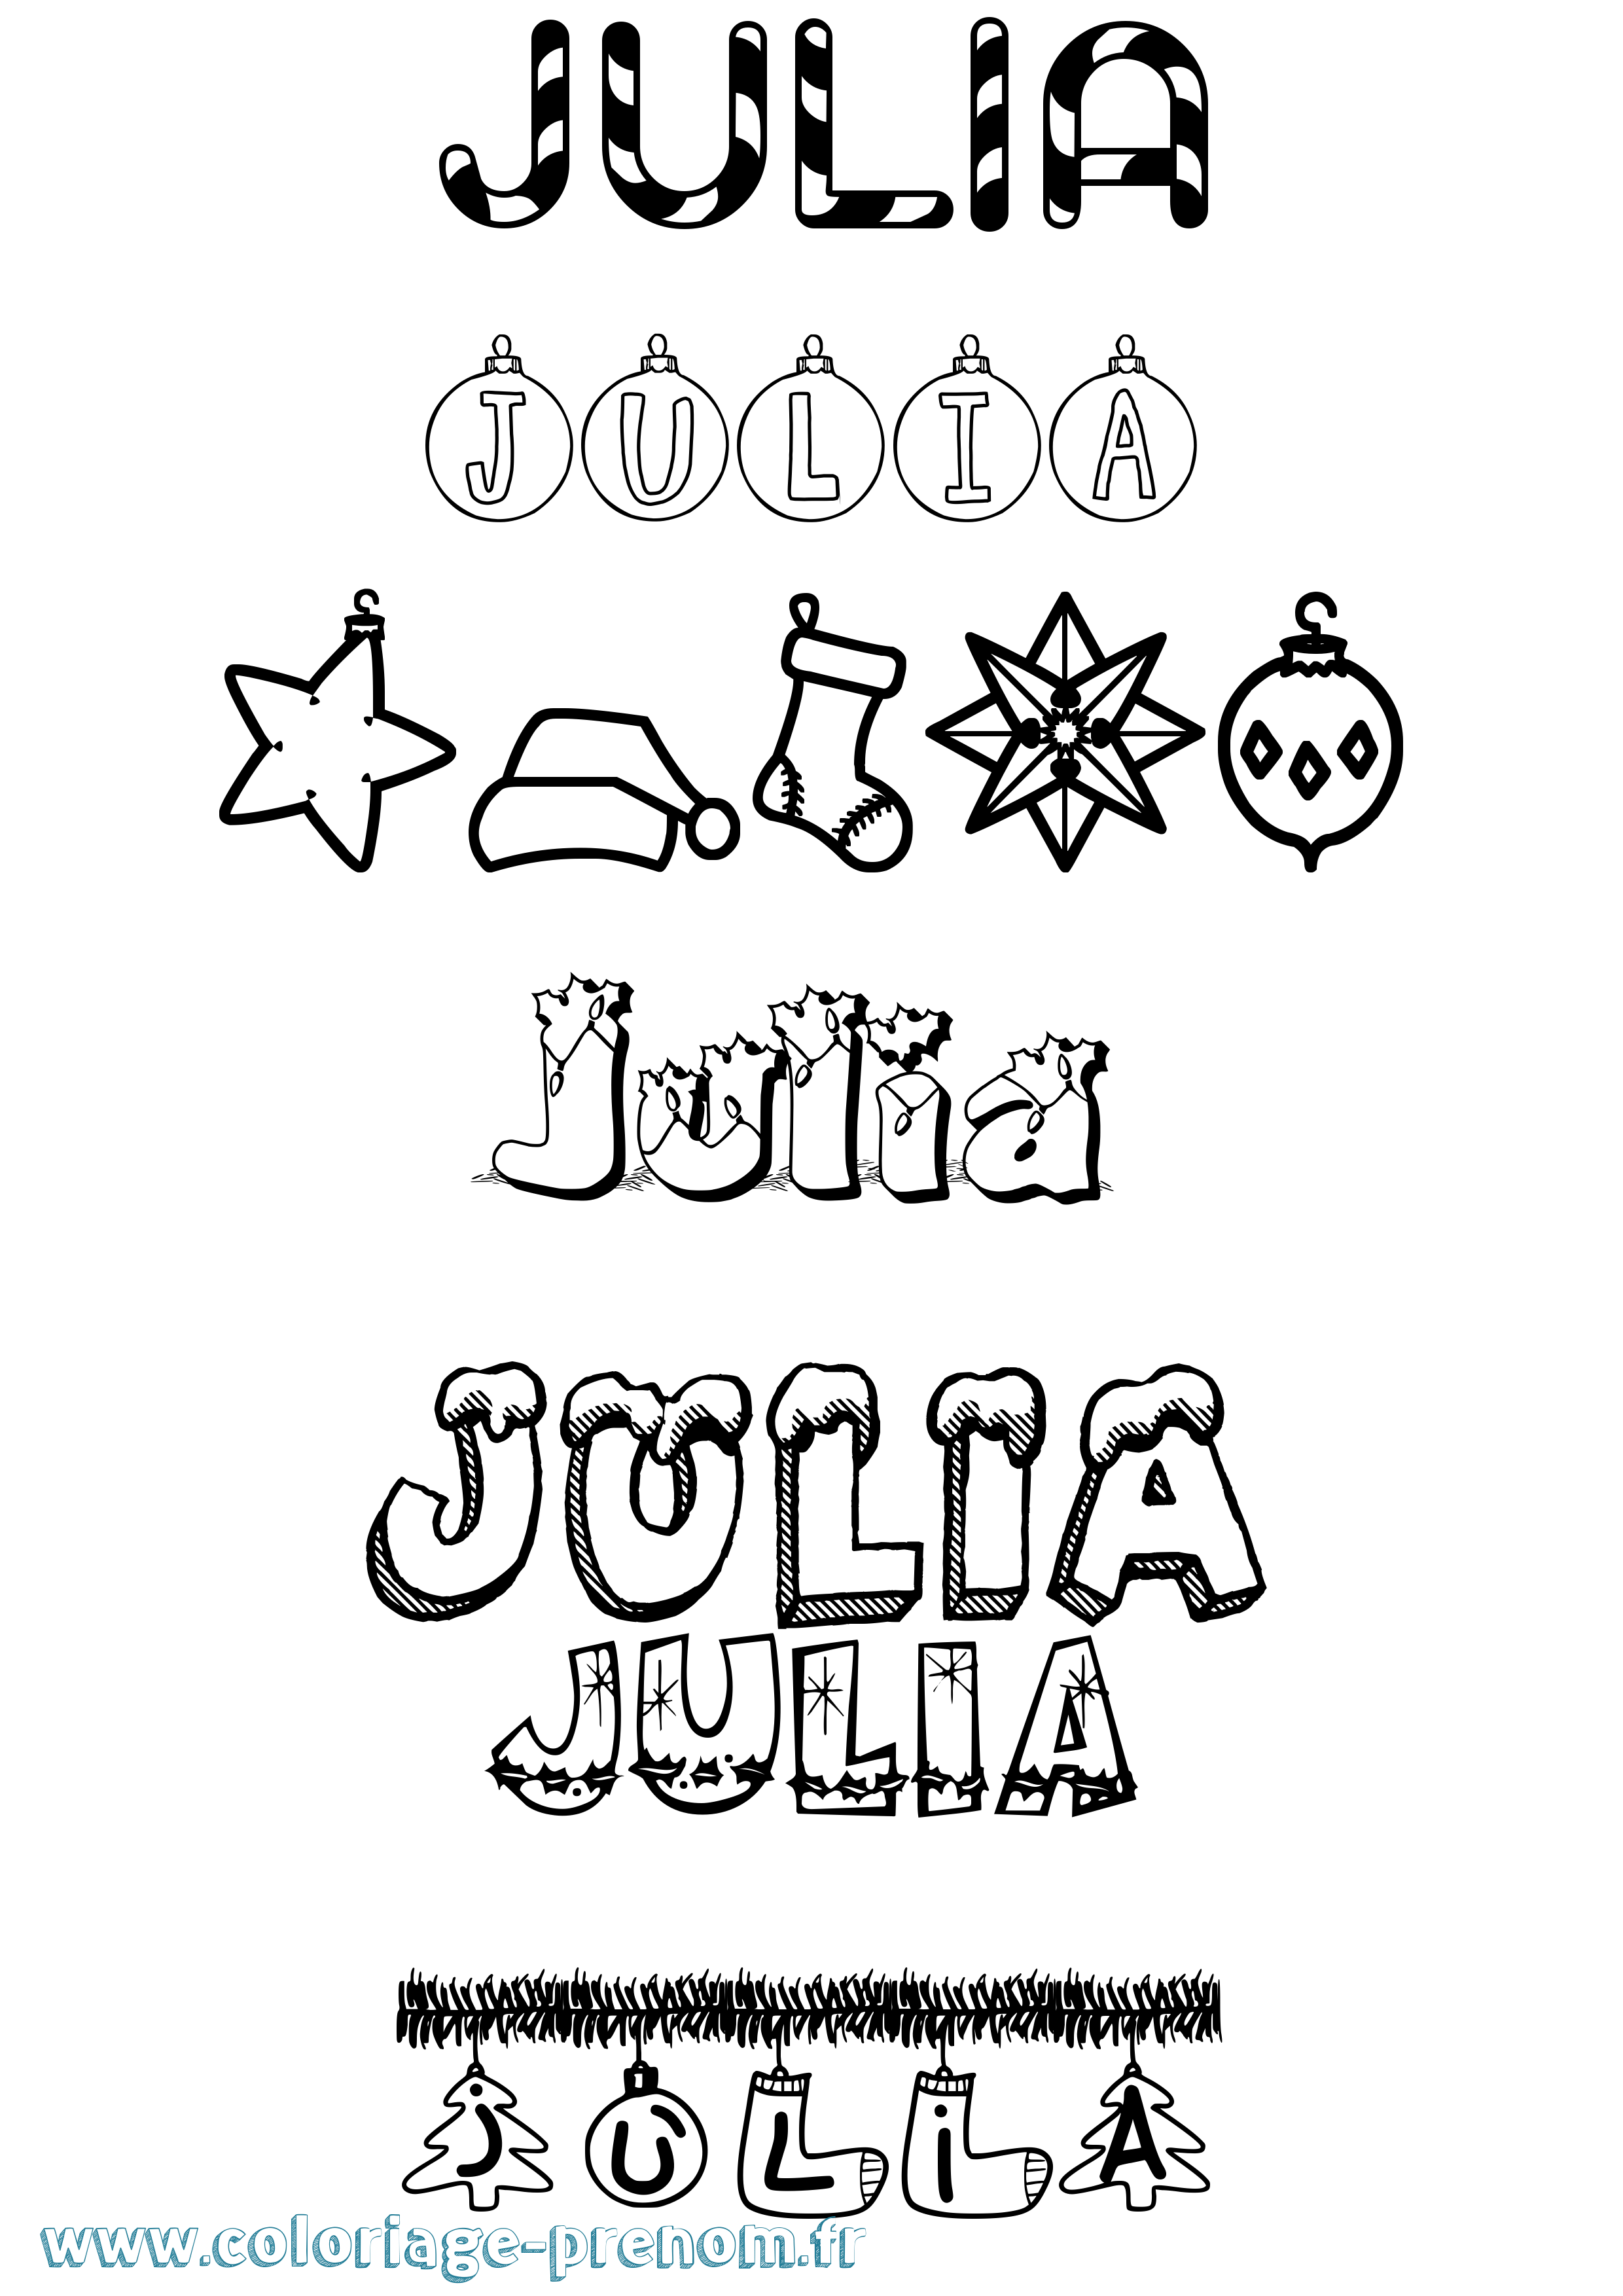 Coloriage prénom Julia